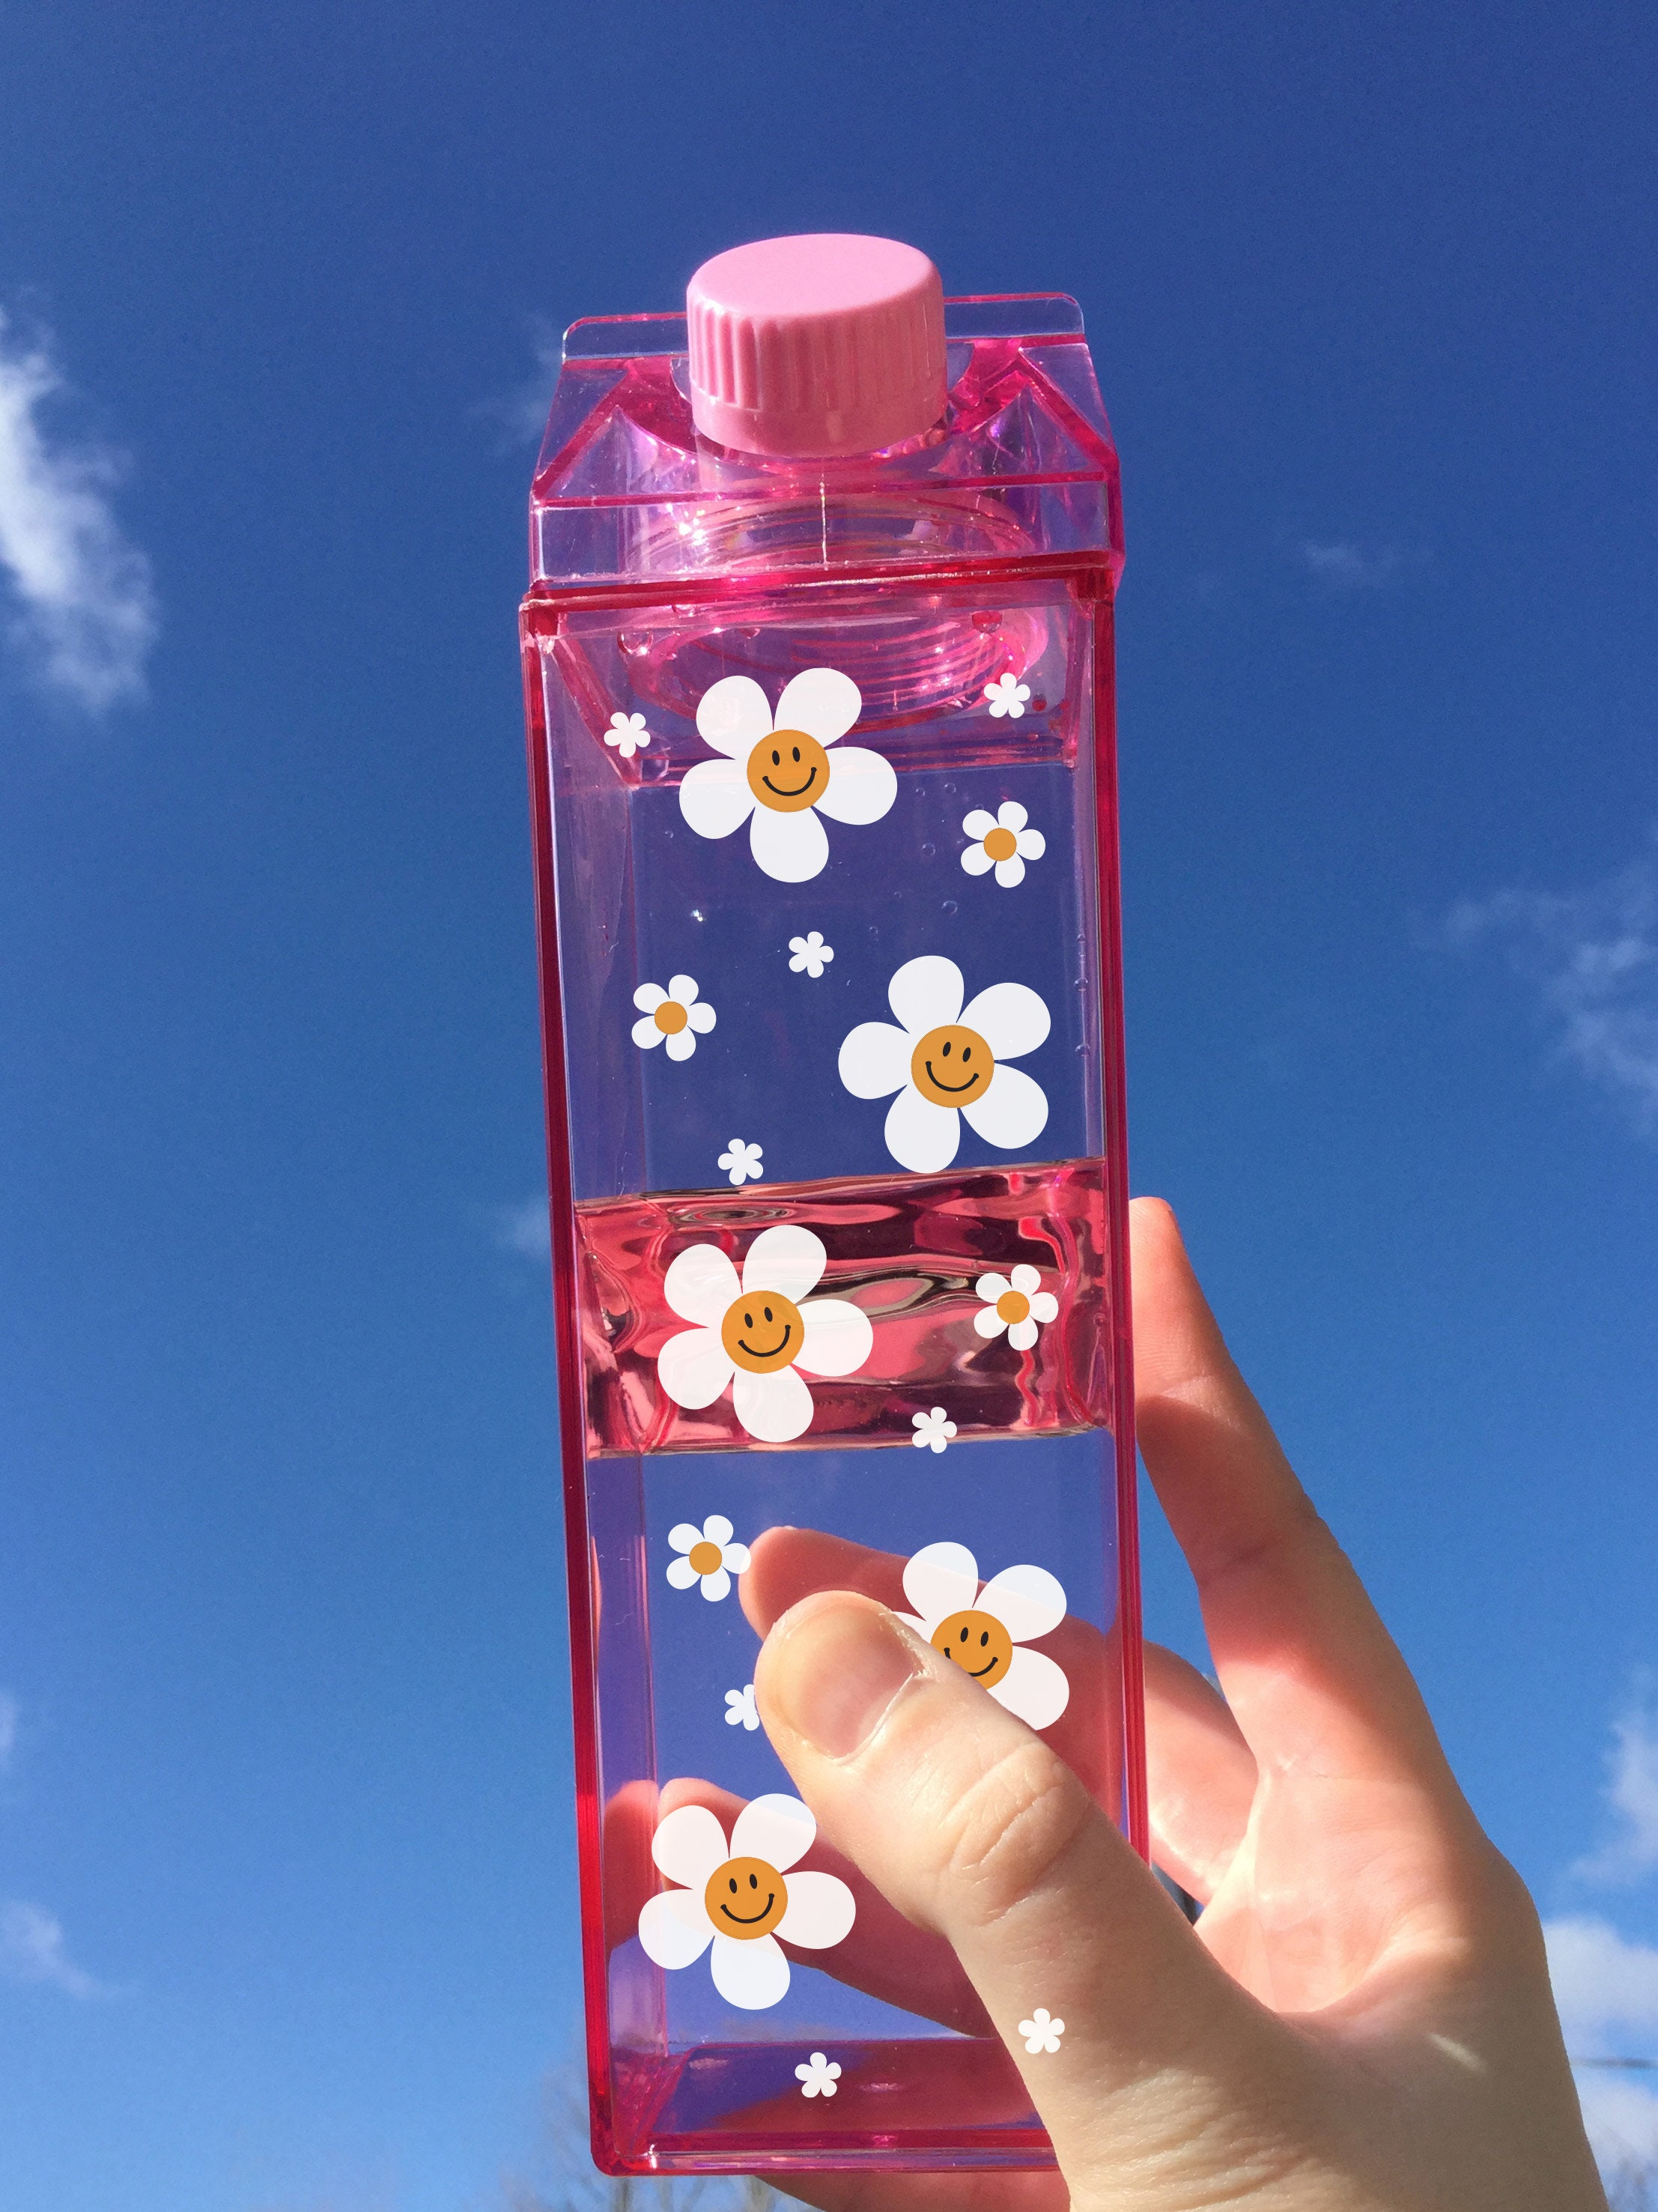 Milk carton water bottles